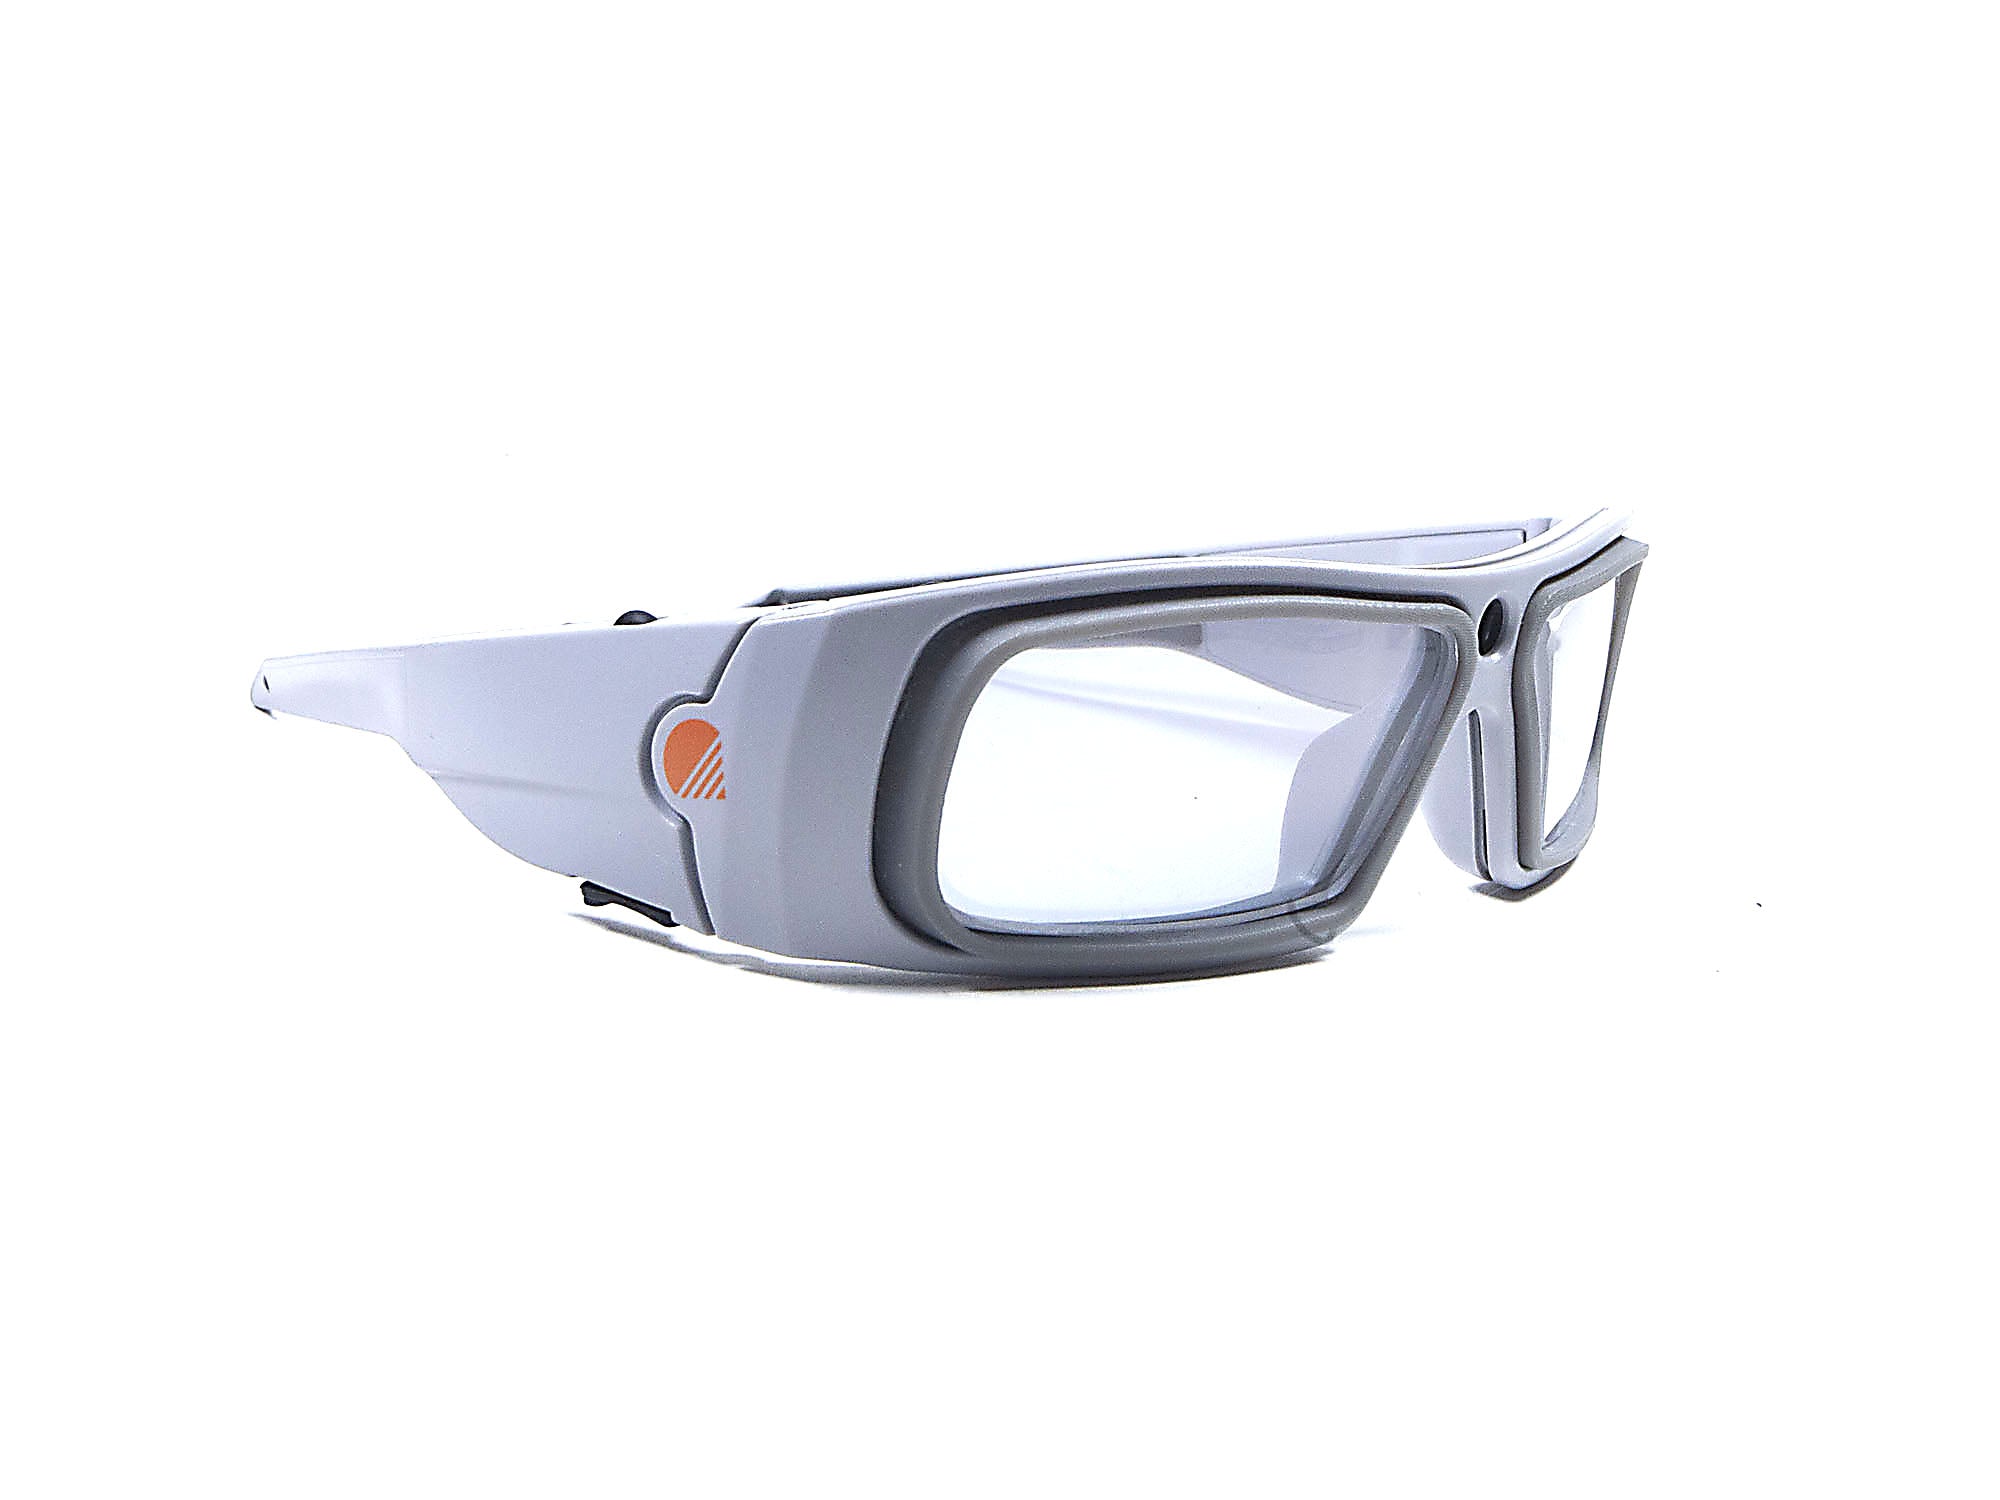 goggles with prescription lenses